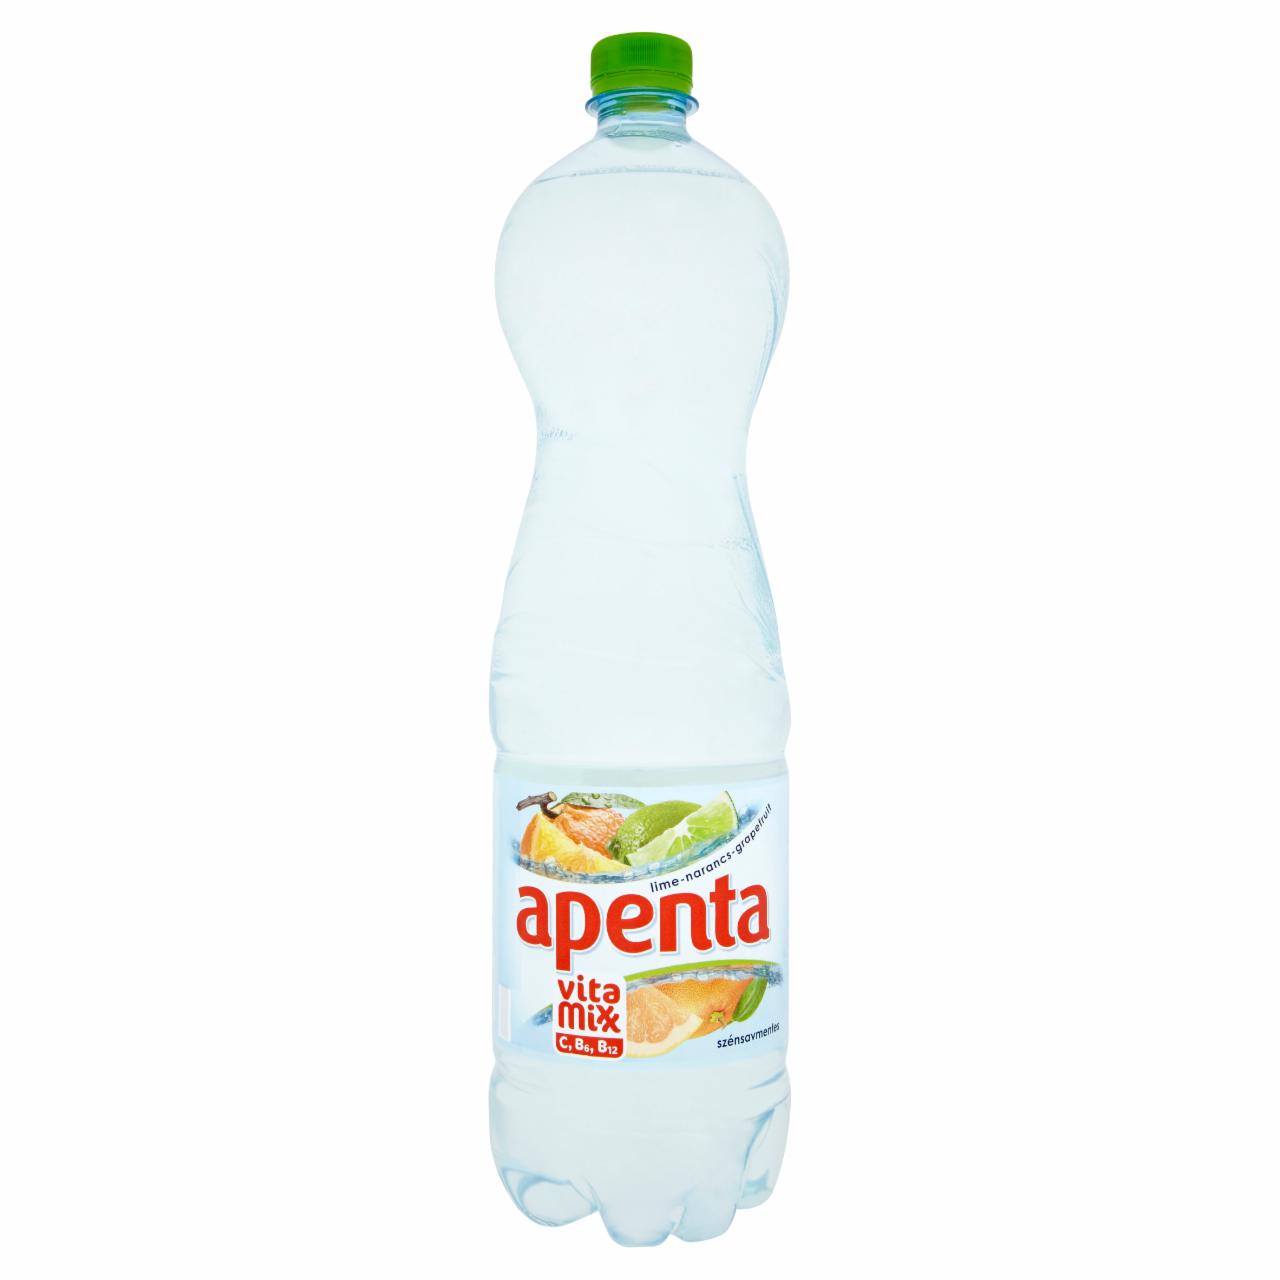 Képek - Apenta Vitamixx lime-narancs-grapefruit szénsavmentes energiaszegény üdítőital 1,5 l